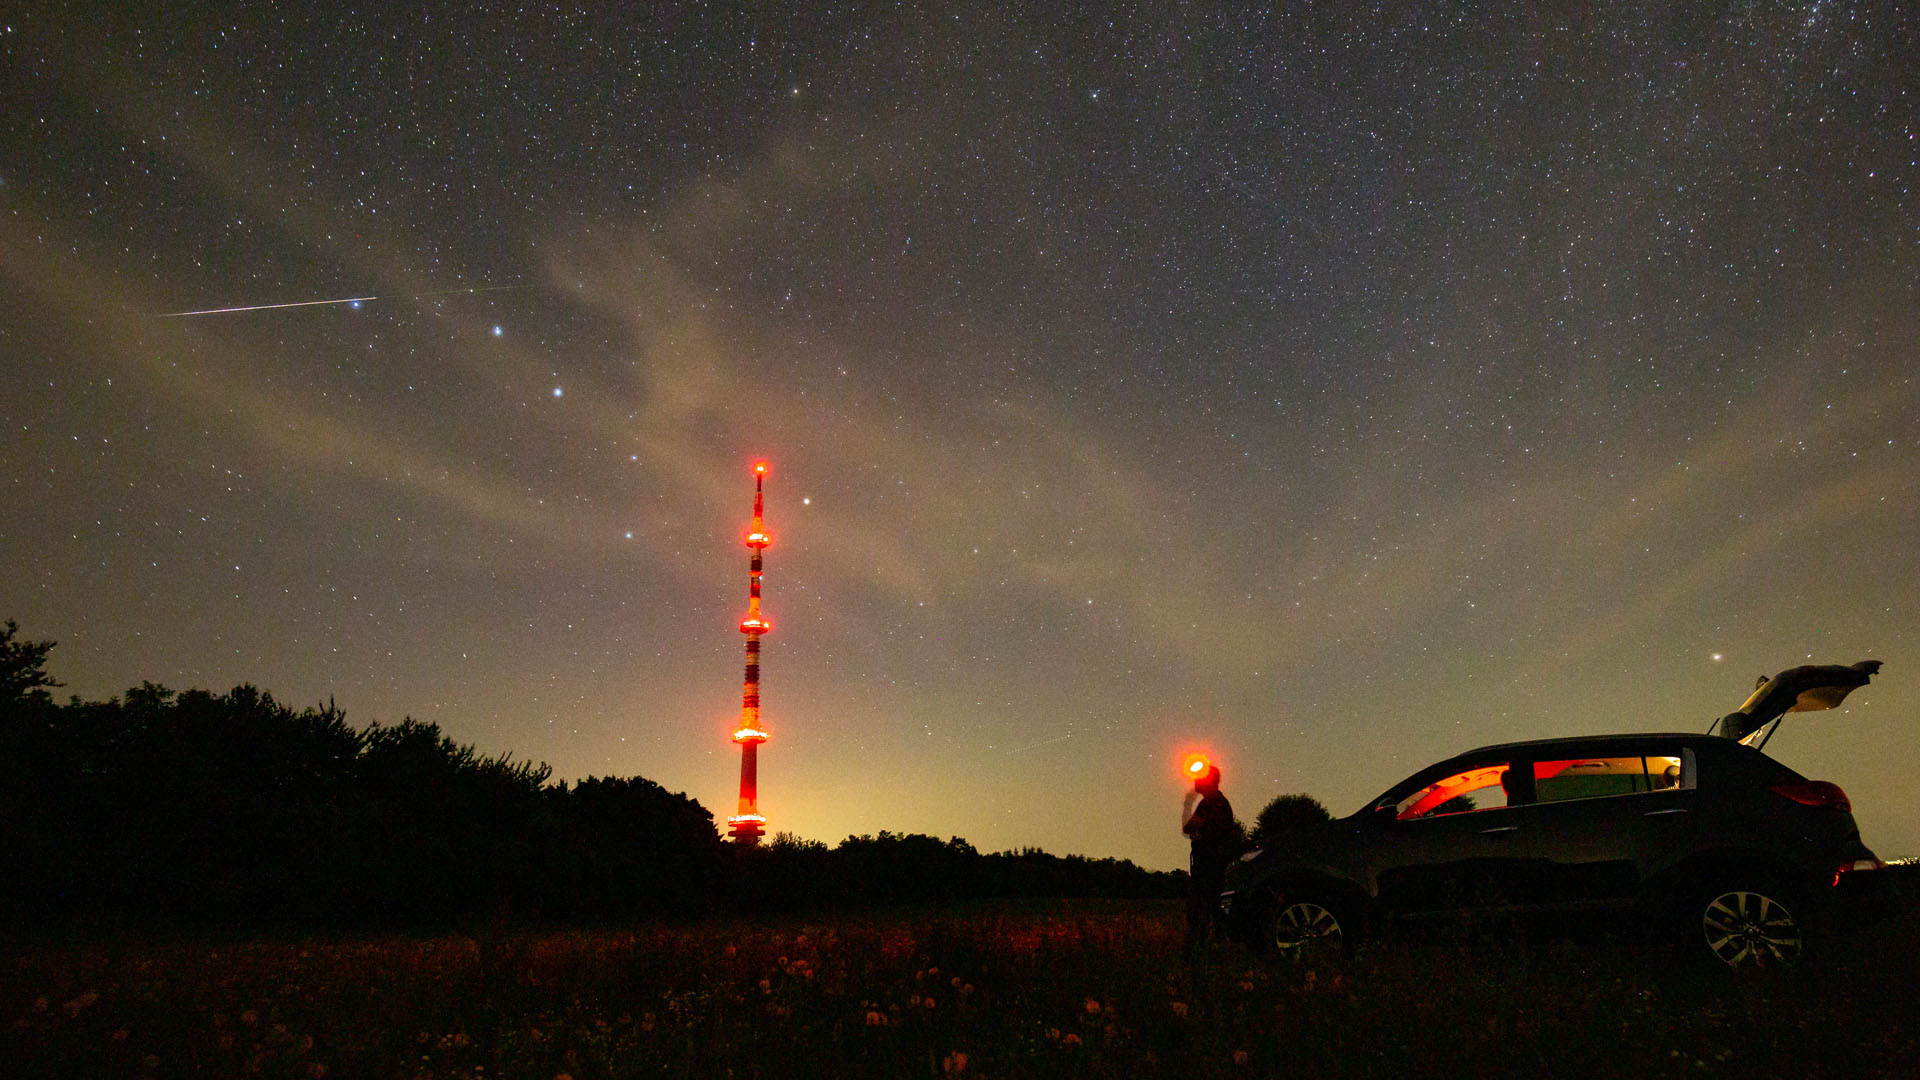 Svábhegyi Csillagvizsgáló perseidák meteor zápor hullócsillag